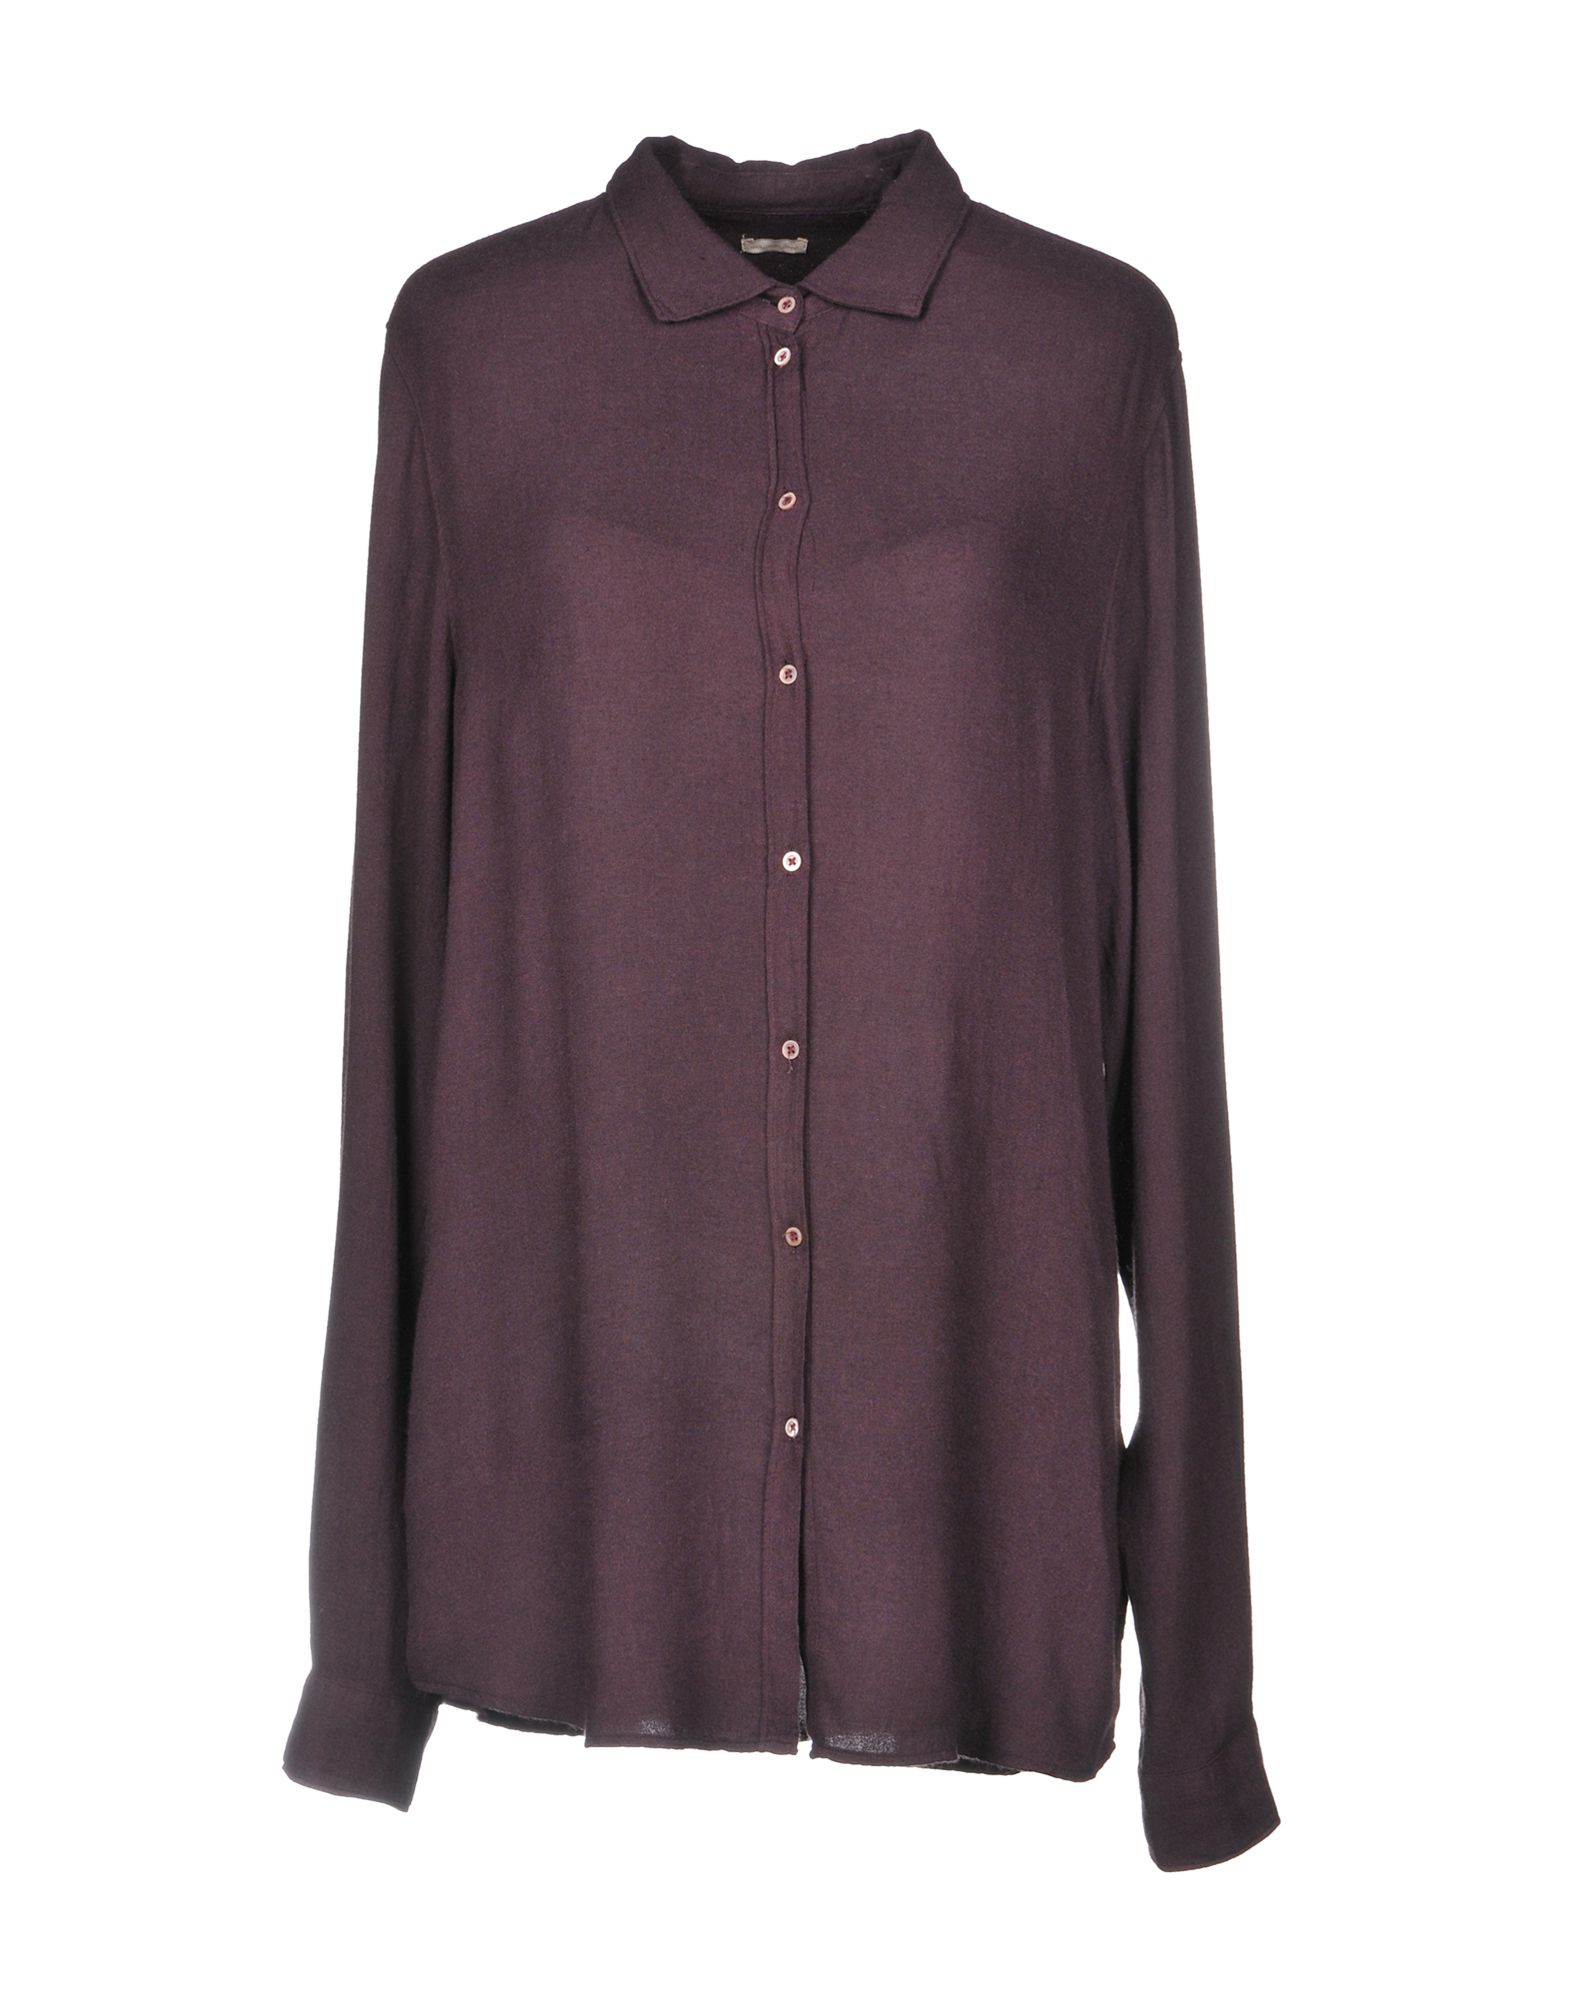 MASSIMO ALBA Solid color shirts & blouses,38757990IA 6